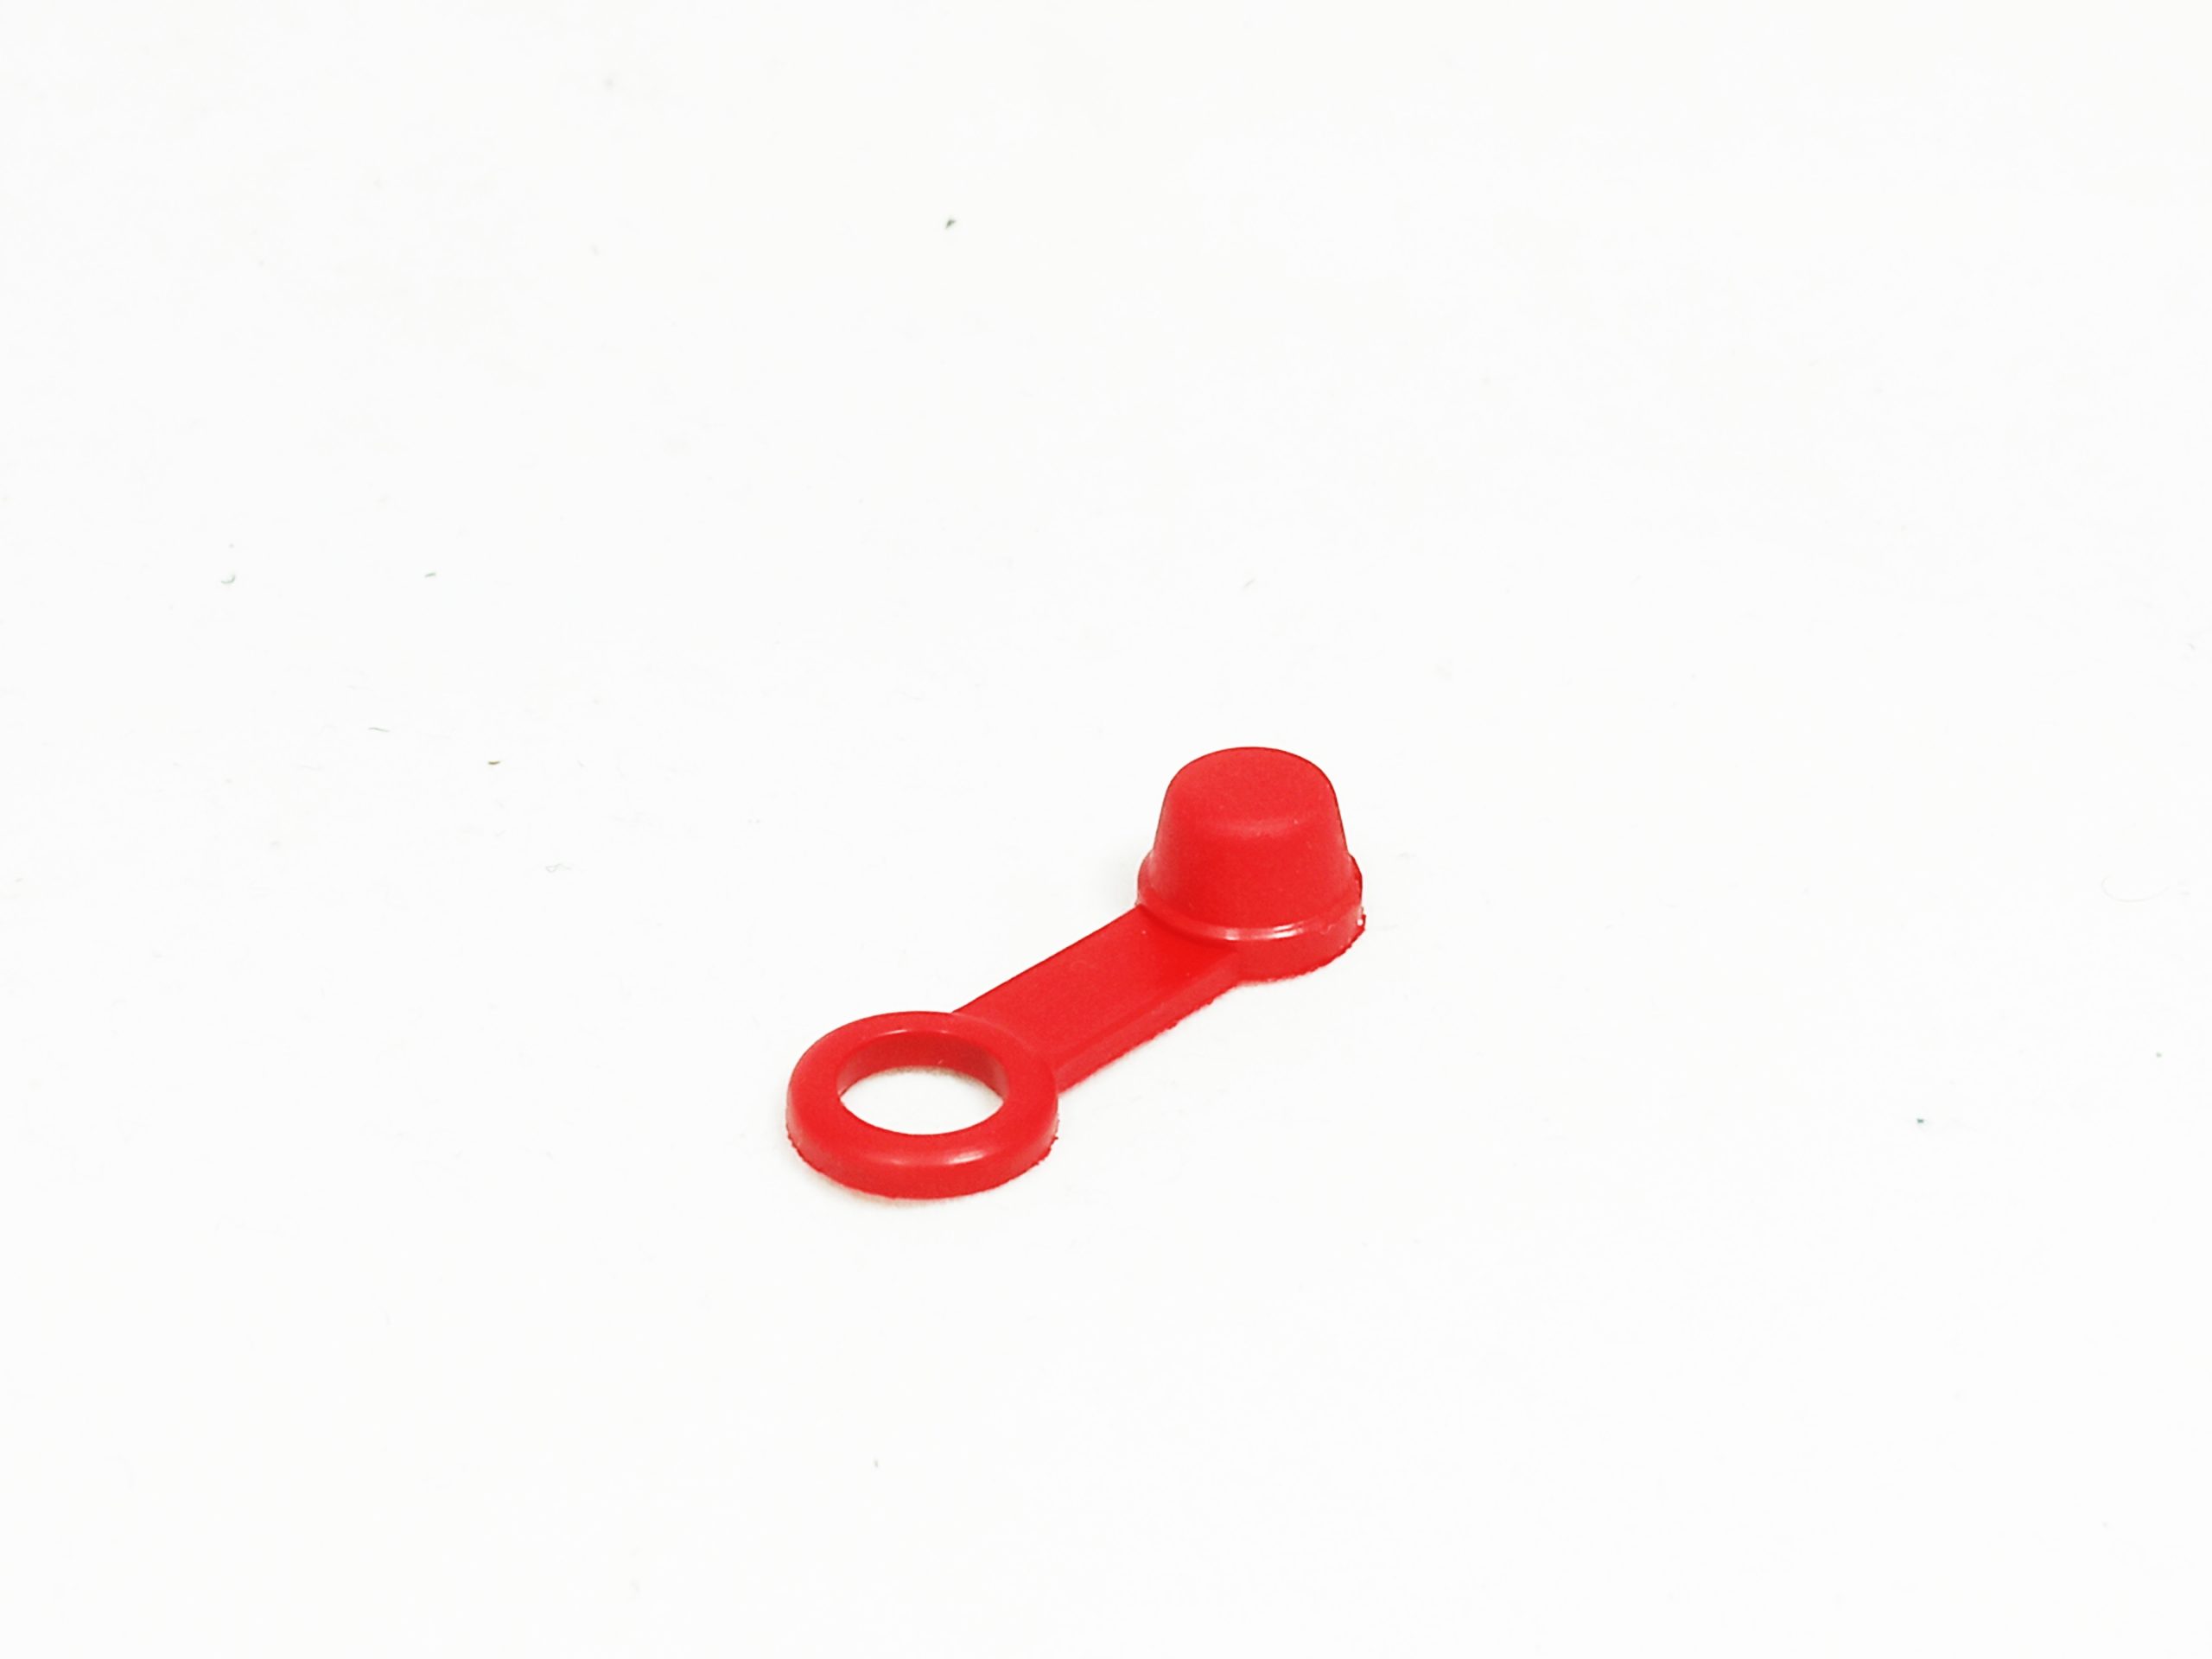 Čepička/Krytka odvzdušňovacího šroubu - barva červená